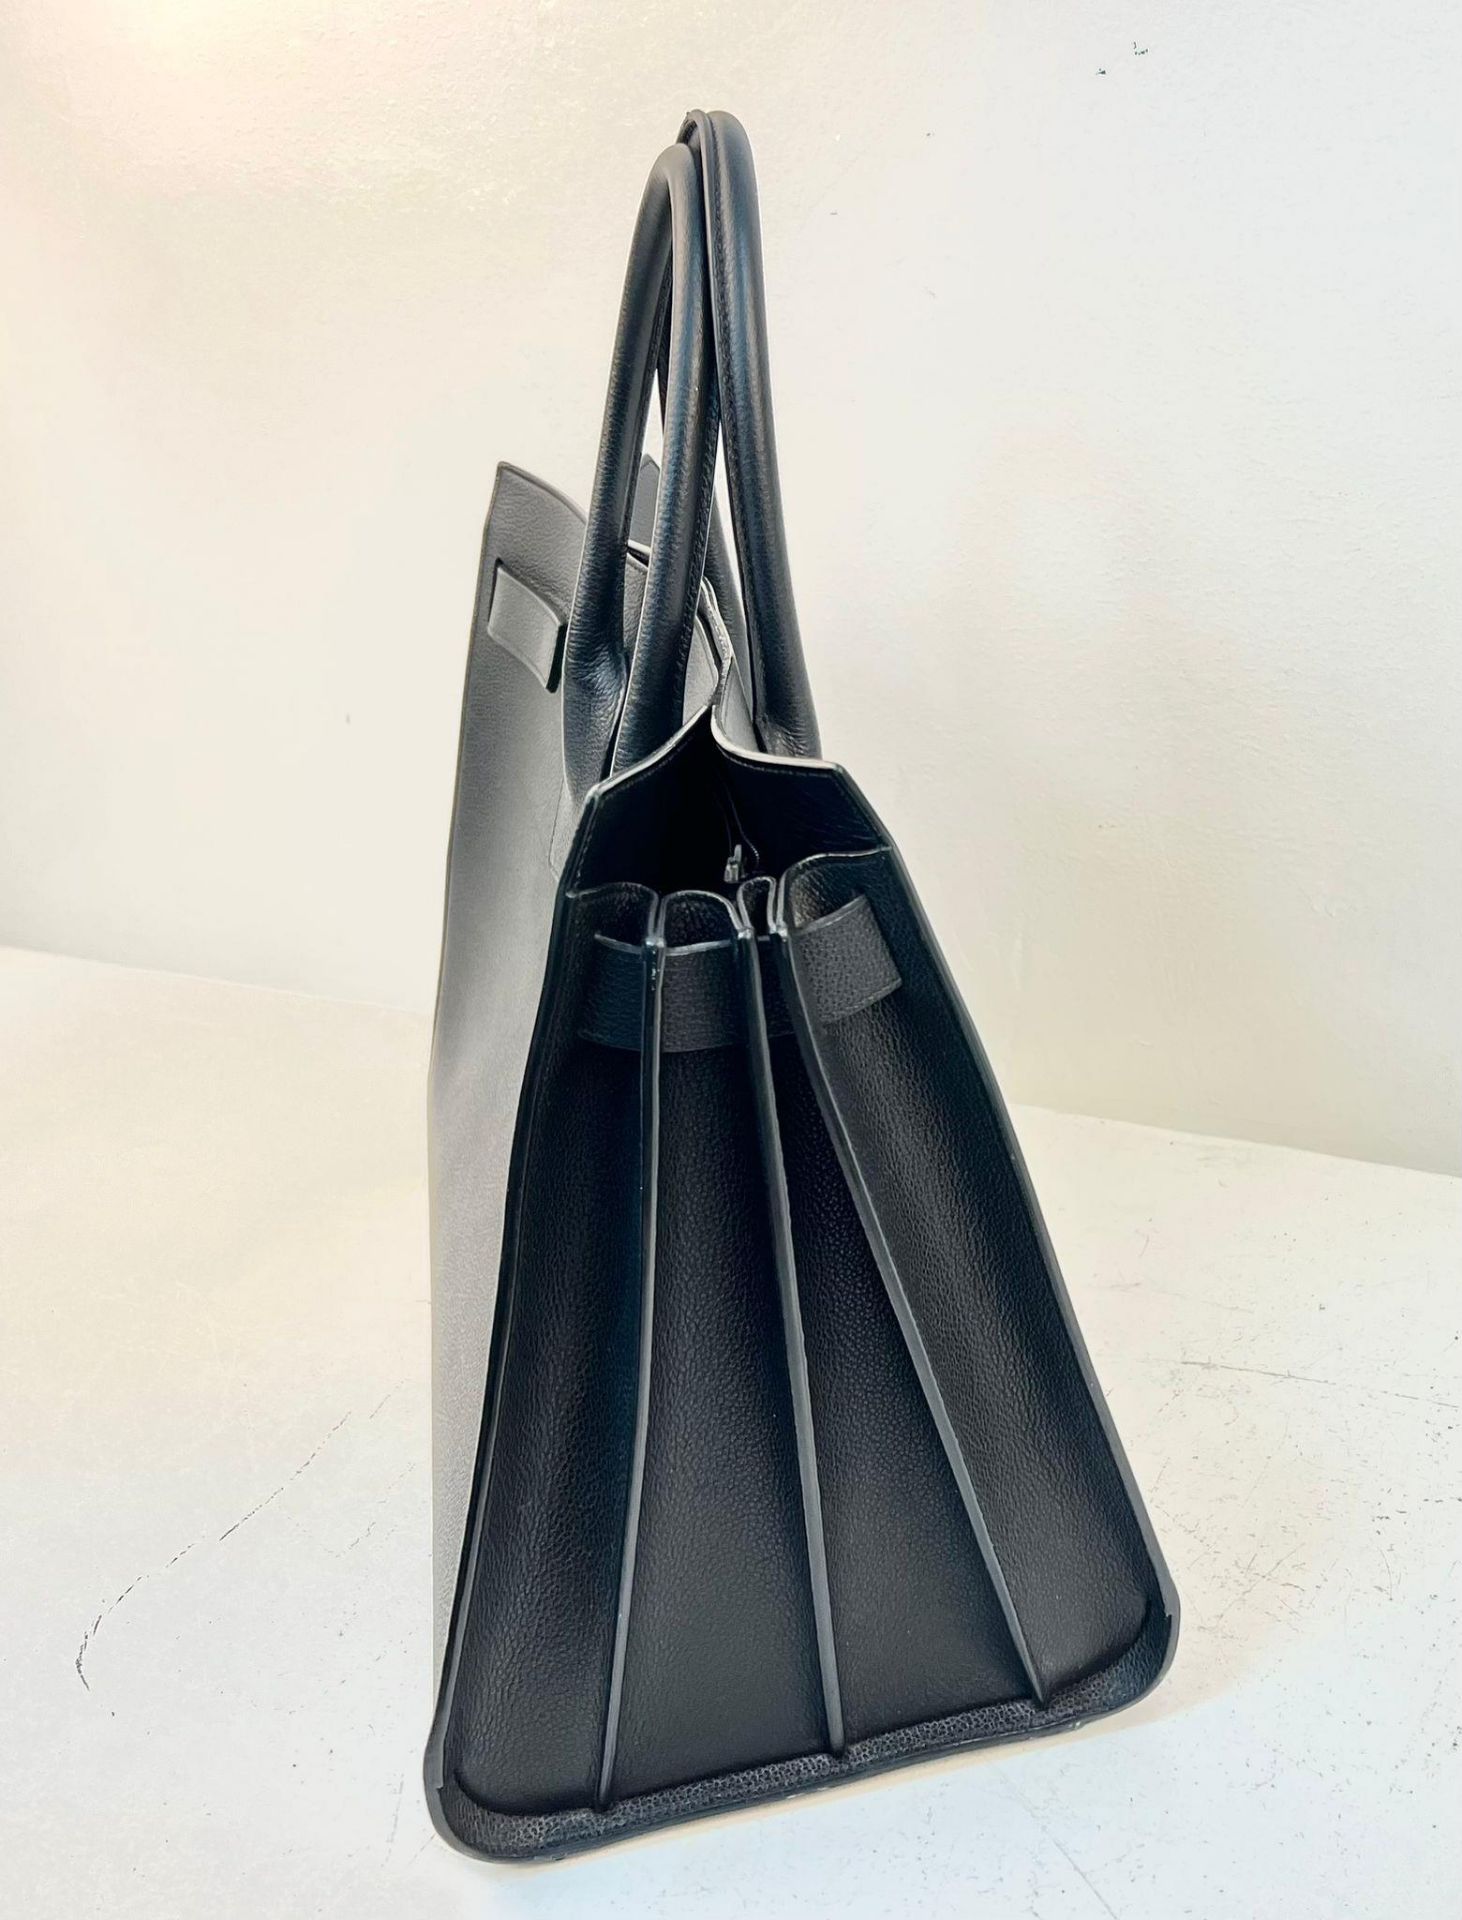 An Yves St Laurent (Saint Laurent) Sac du Jour Black Leather Tote Bag. Luxurious black calfskin - Bild 4 aus 8